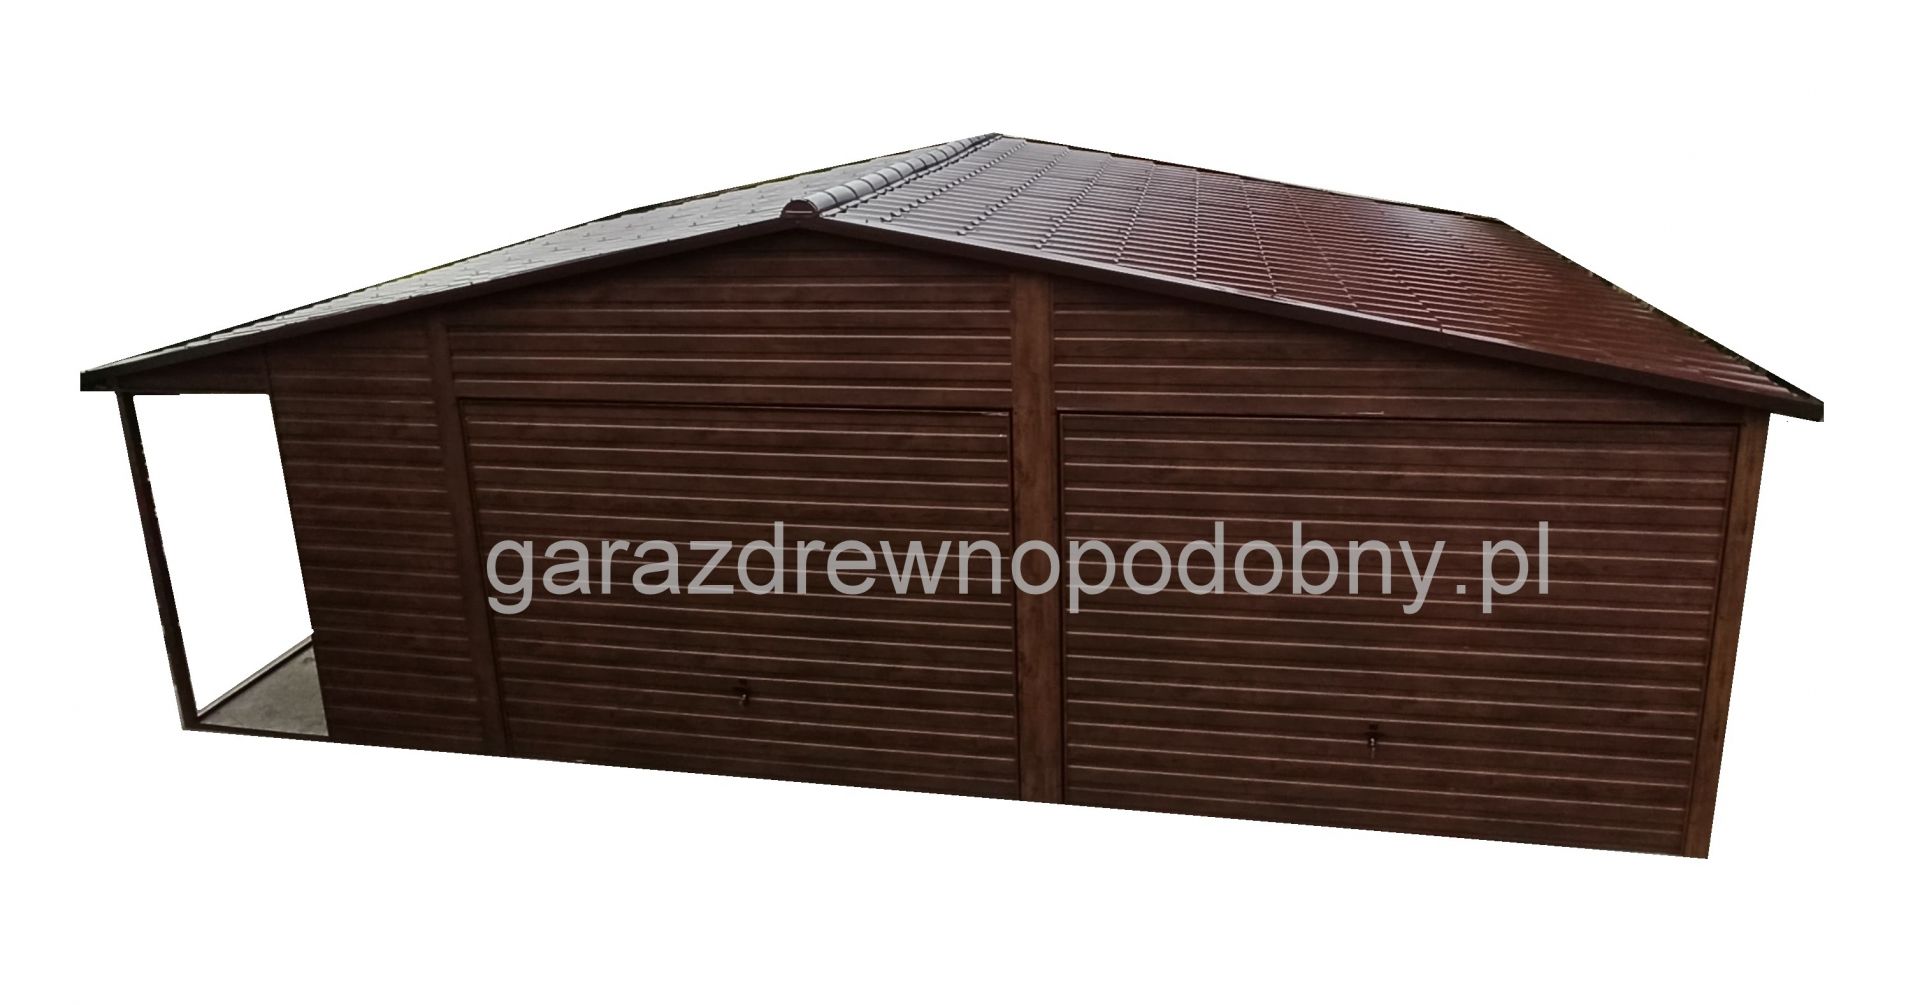 Garaż drewnopodobny 7×6 +1m wiaty  - Zdjęcie 1